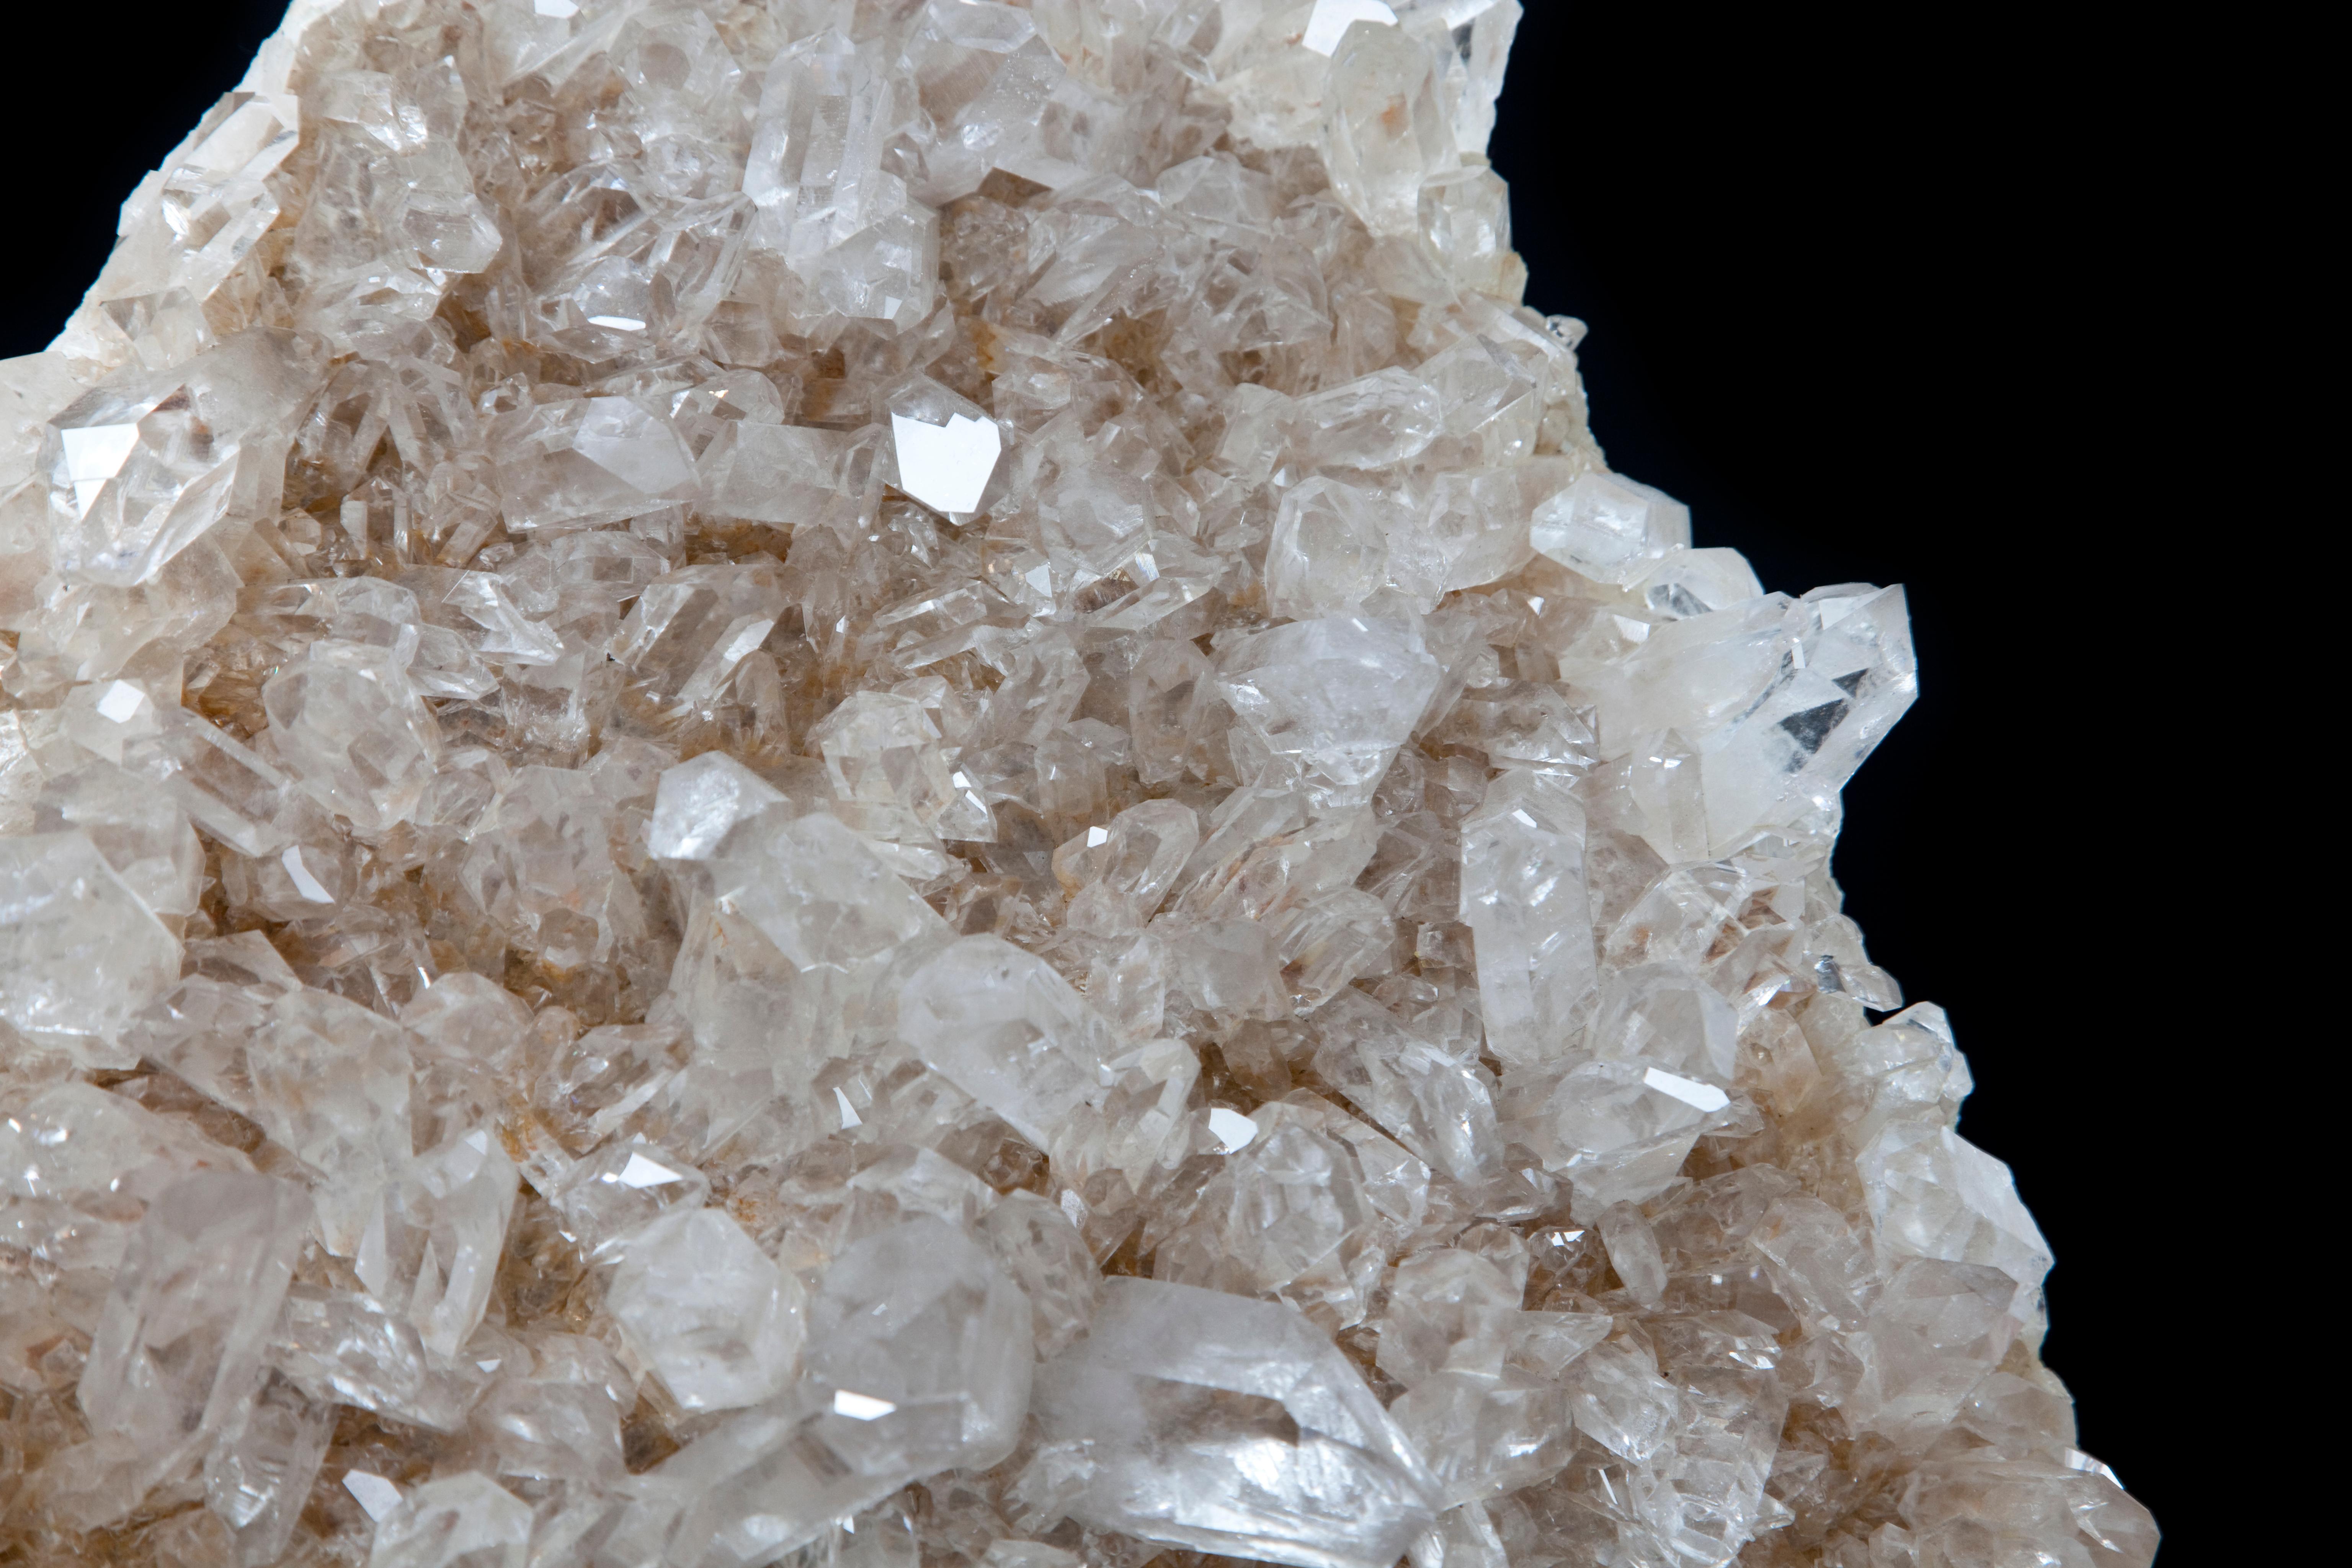 arkansas quartz crystals for sale